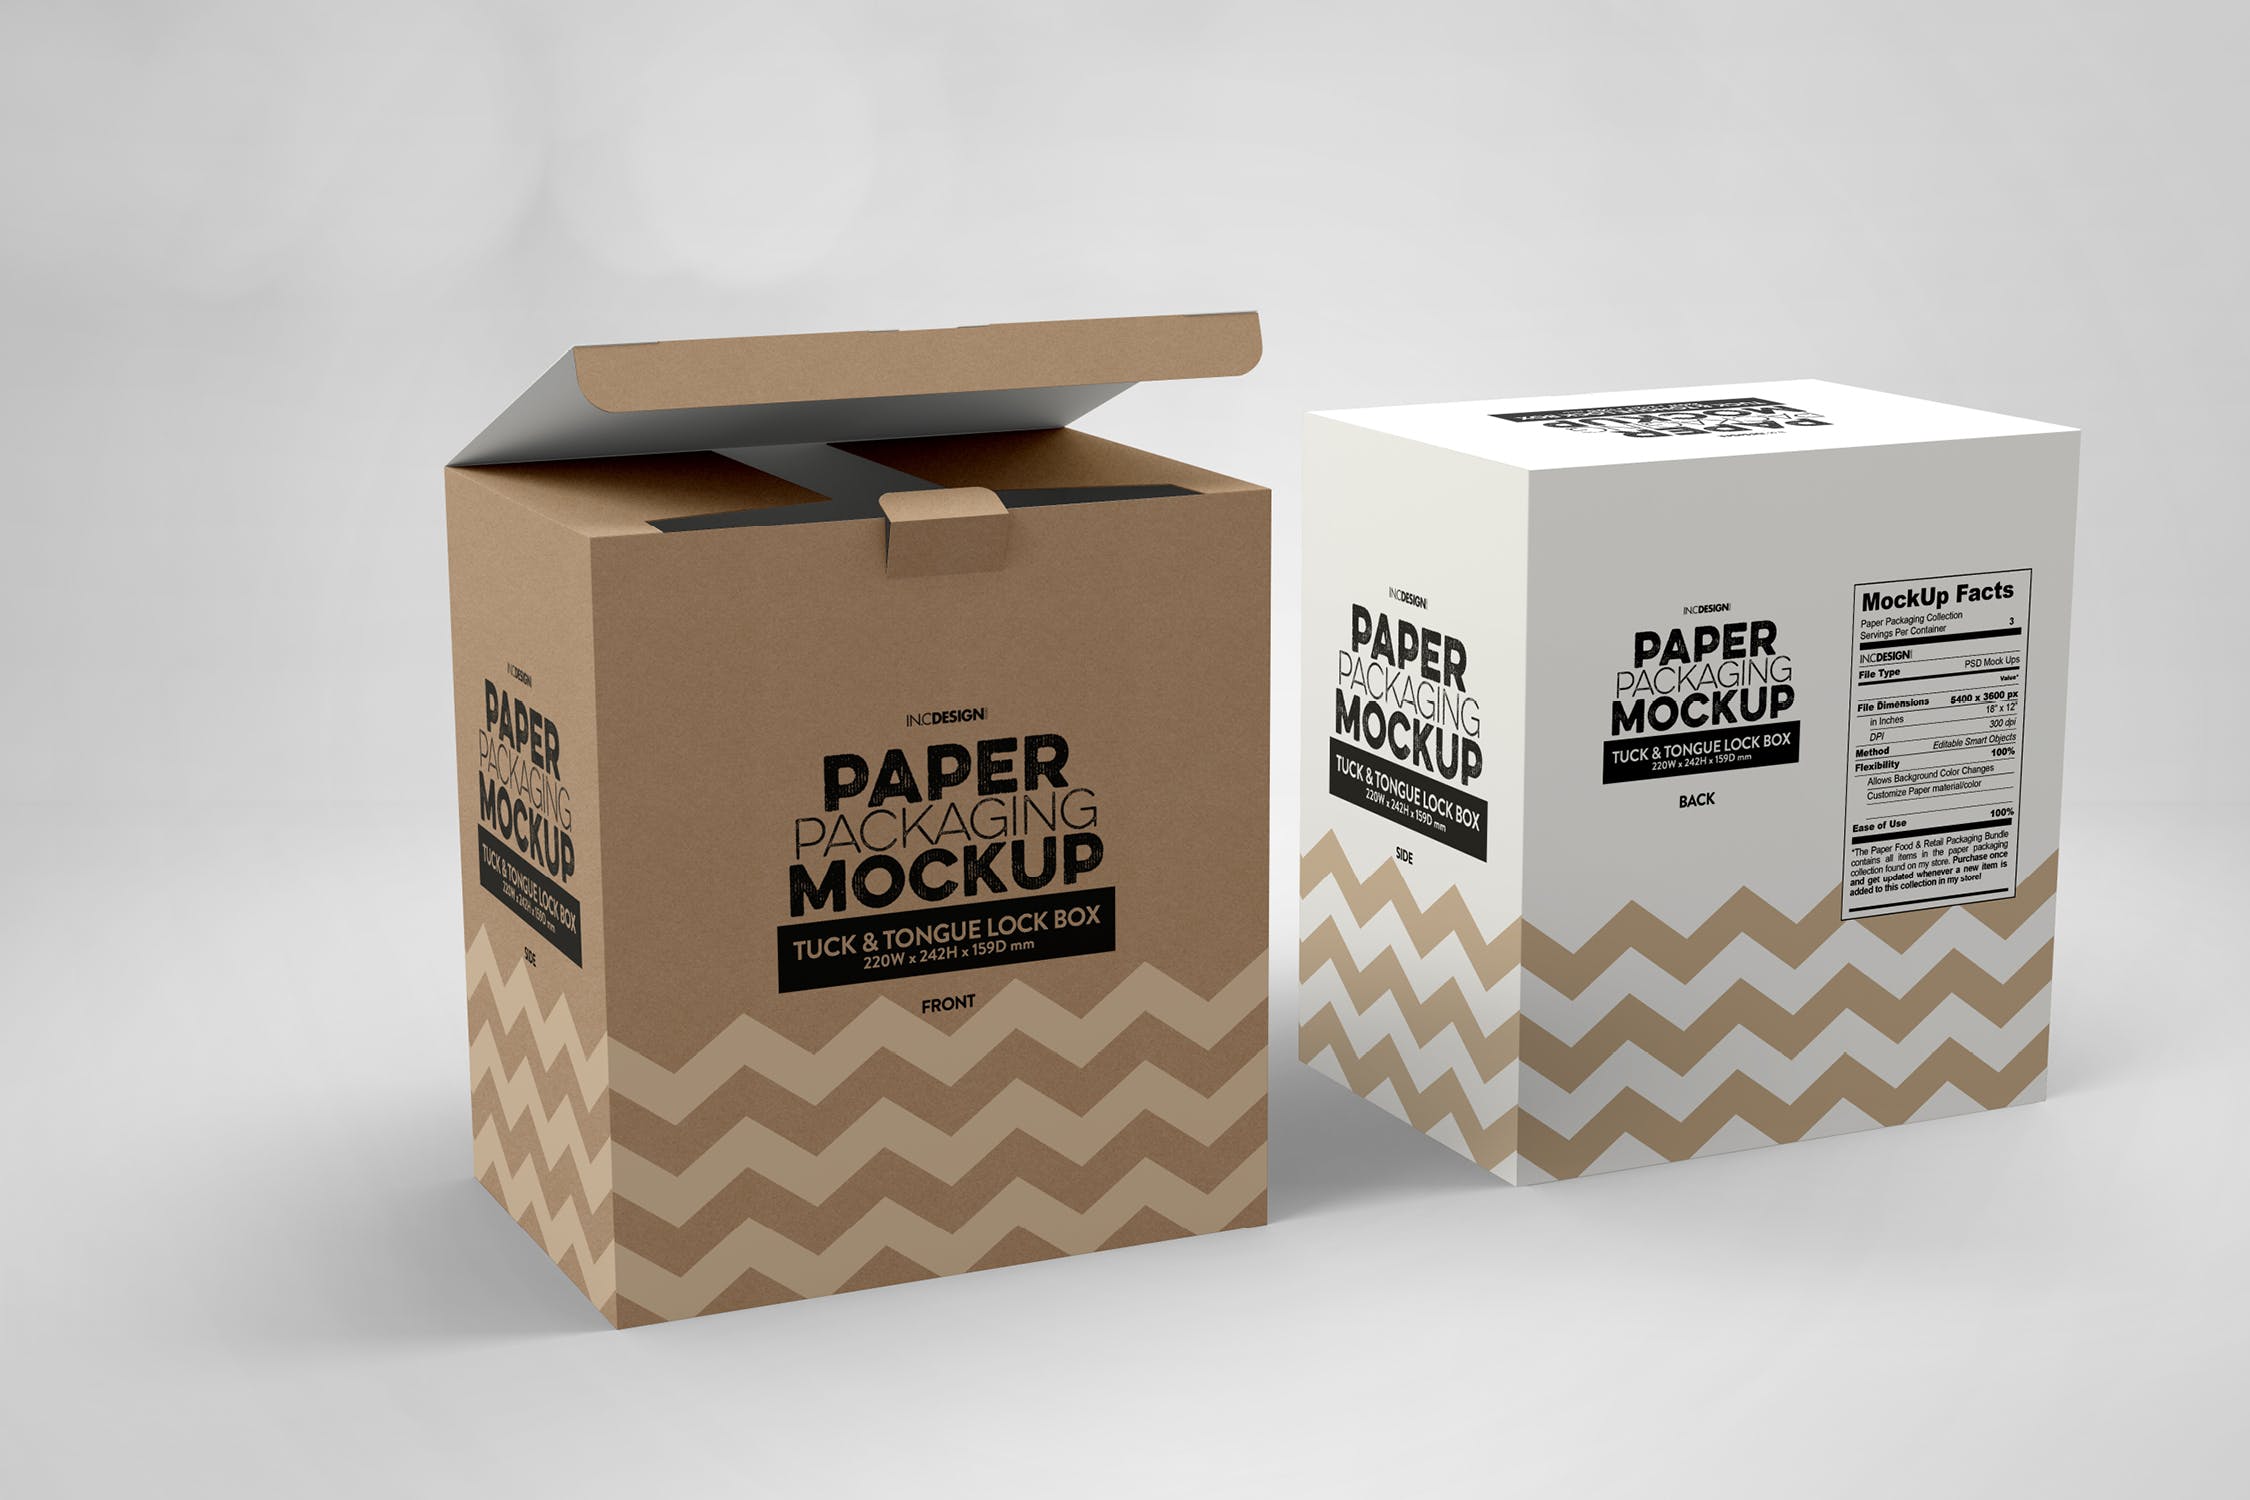 产品包装纸盒外观设计样机模板 Paper Box Tuck & Tongue Lock Mockup插图(3)